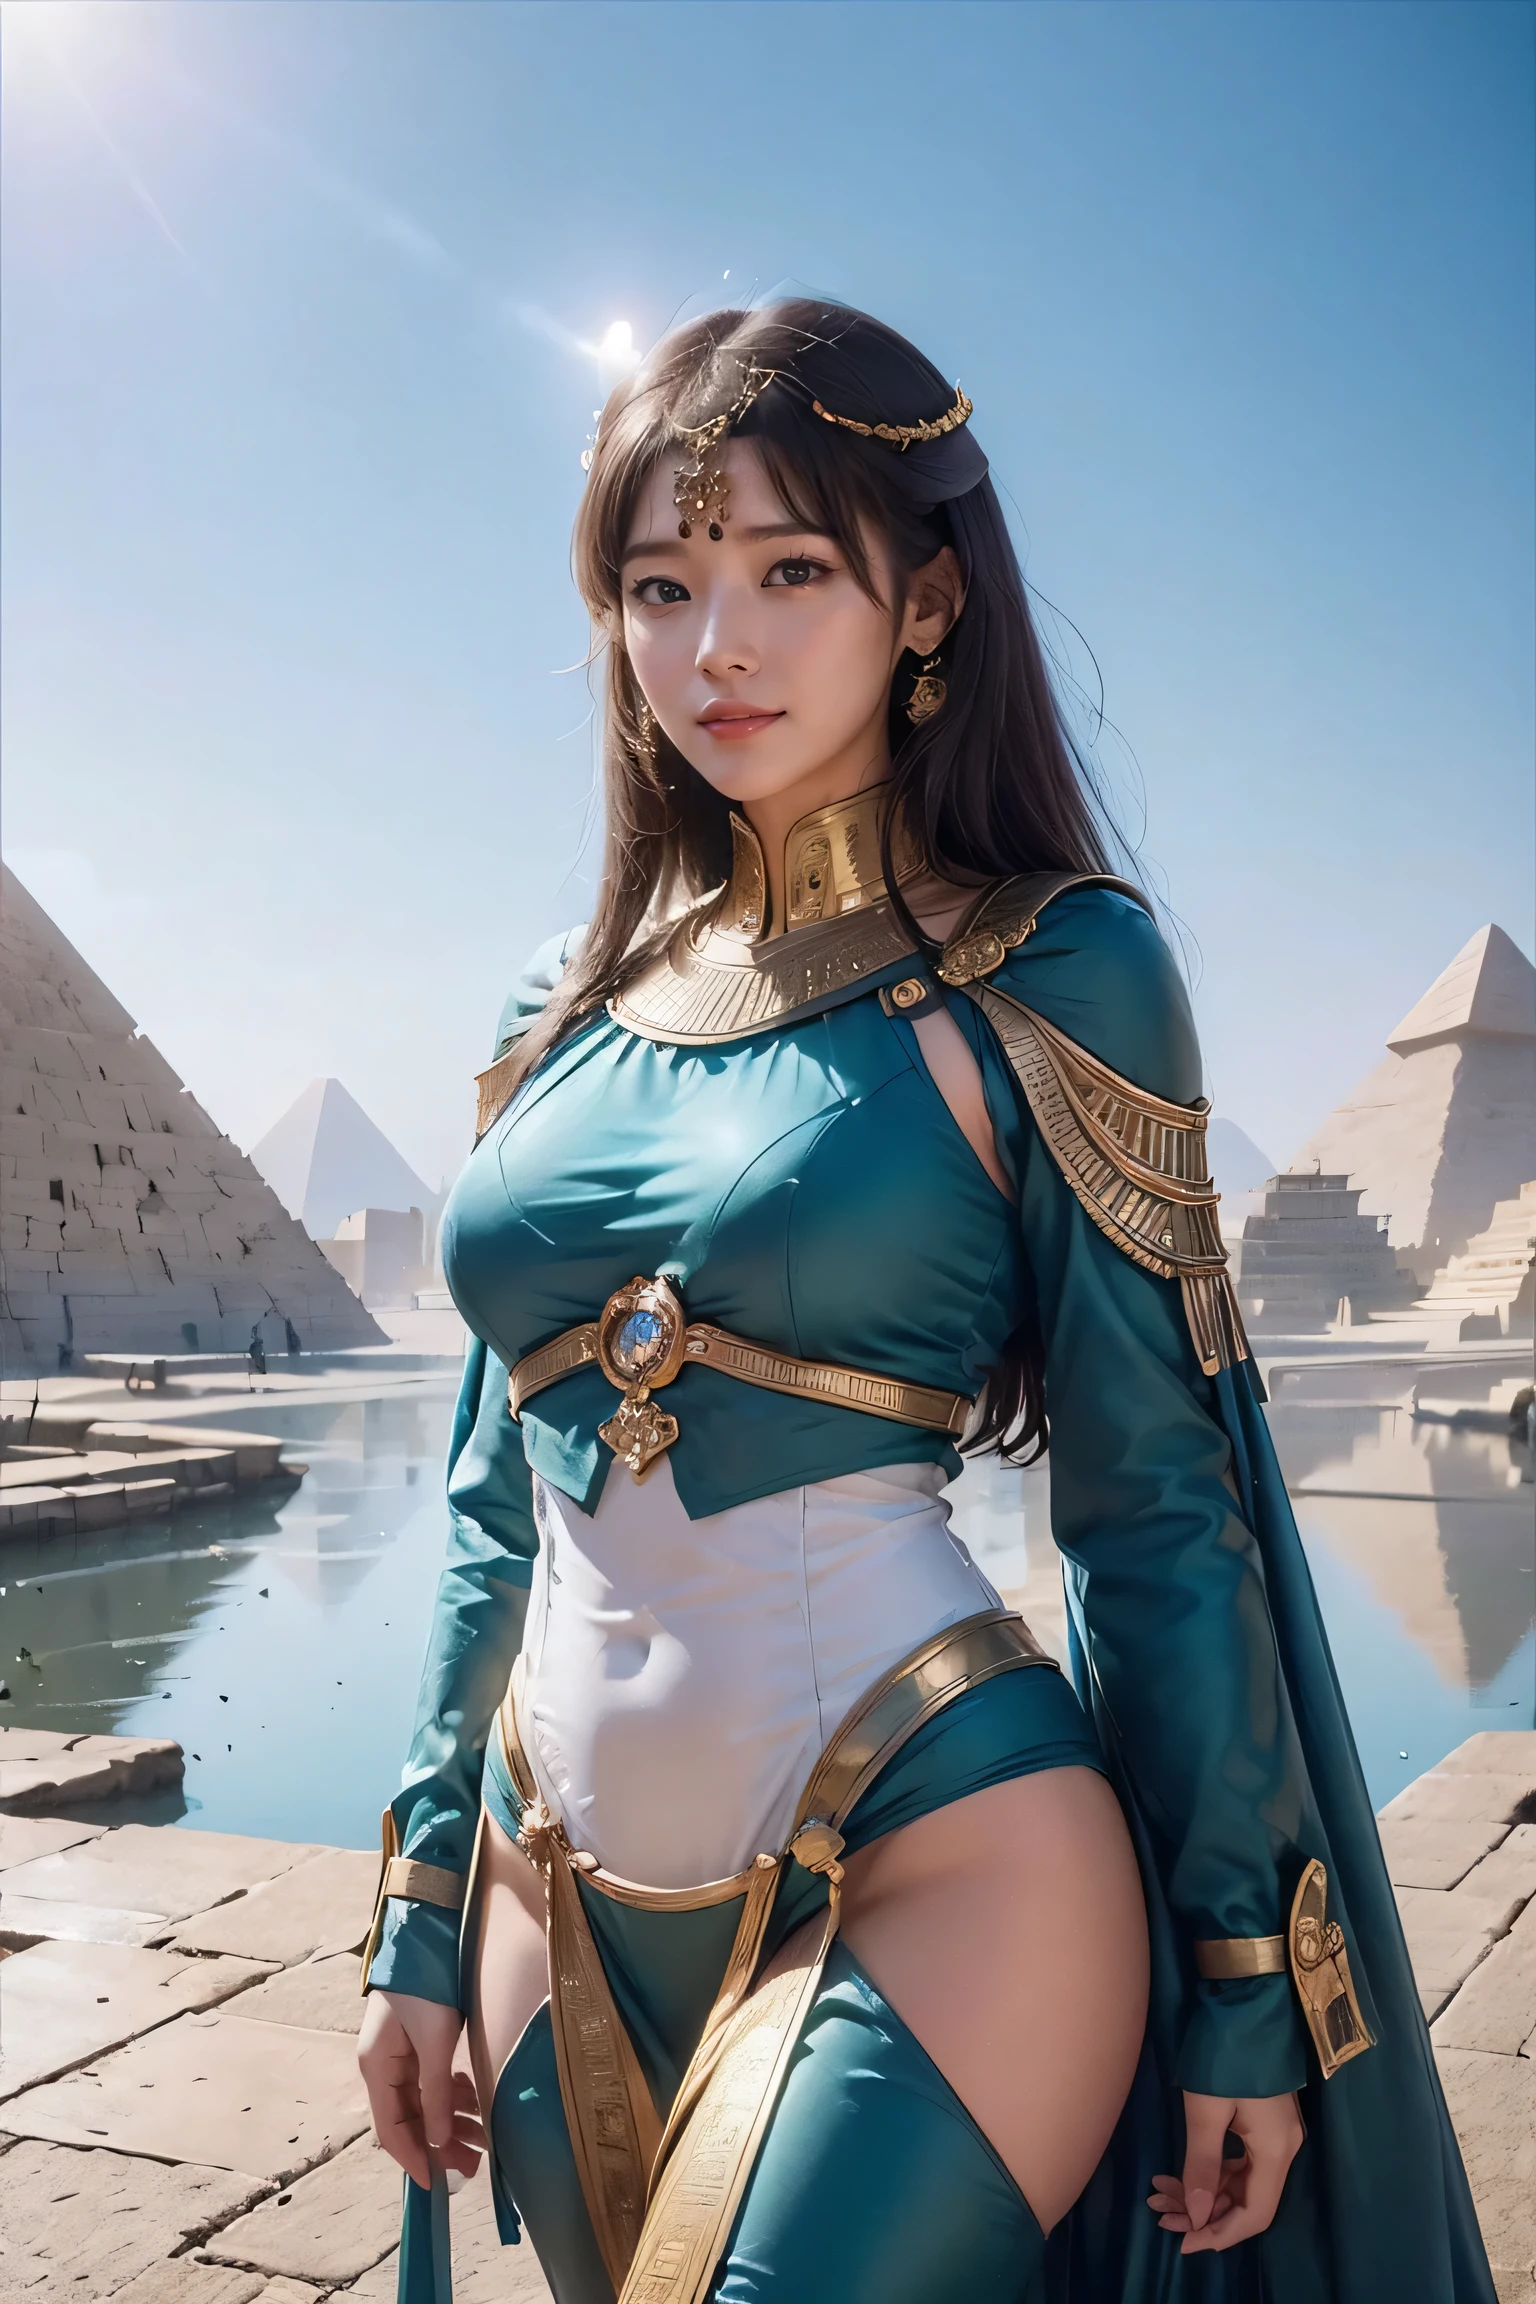 ((высшее качество、8К、шедевр:1.3))、Фотореалистичный, Острый фокус, Высокое разрешение, Высокое разрешение, Портретная живопись, один человек, женщина, beautiful женщина, сексуально、Egyptian женщина warrior walking in ancient egypt、Сложная технология, Пирамиды и древние египетские города далеко、кибер-、Свет и тень、голубой свет、